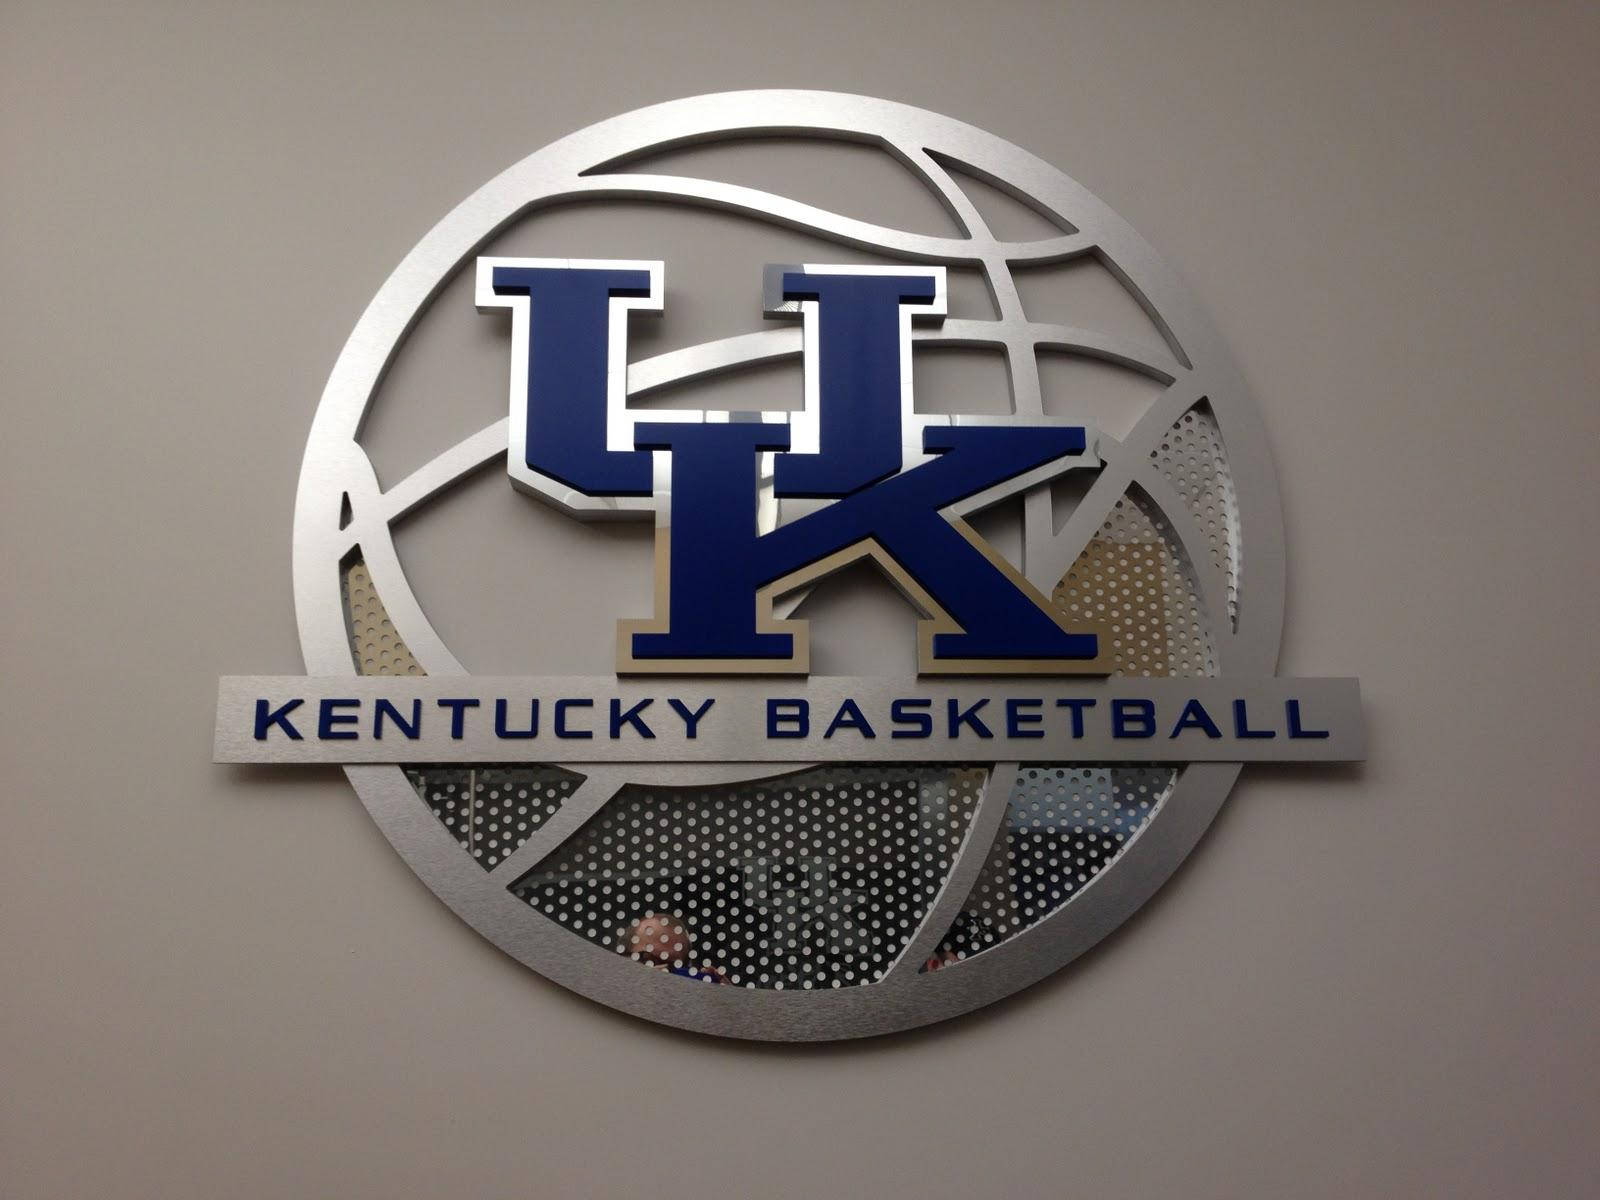 University Of Kentucky Basketball Signage Background